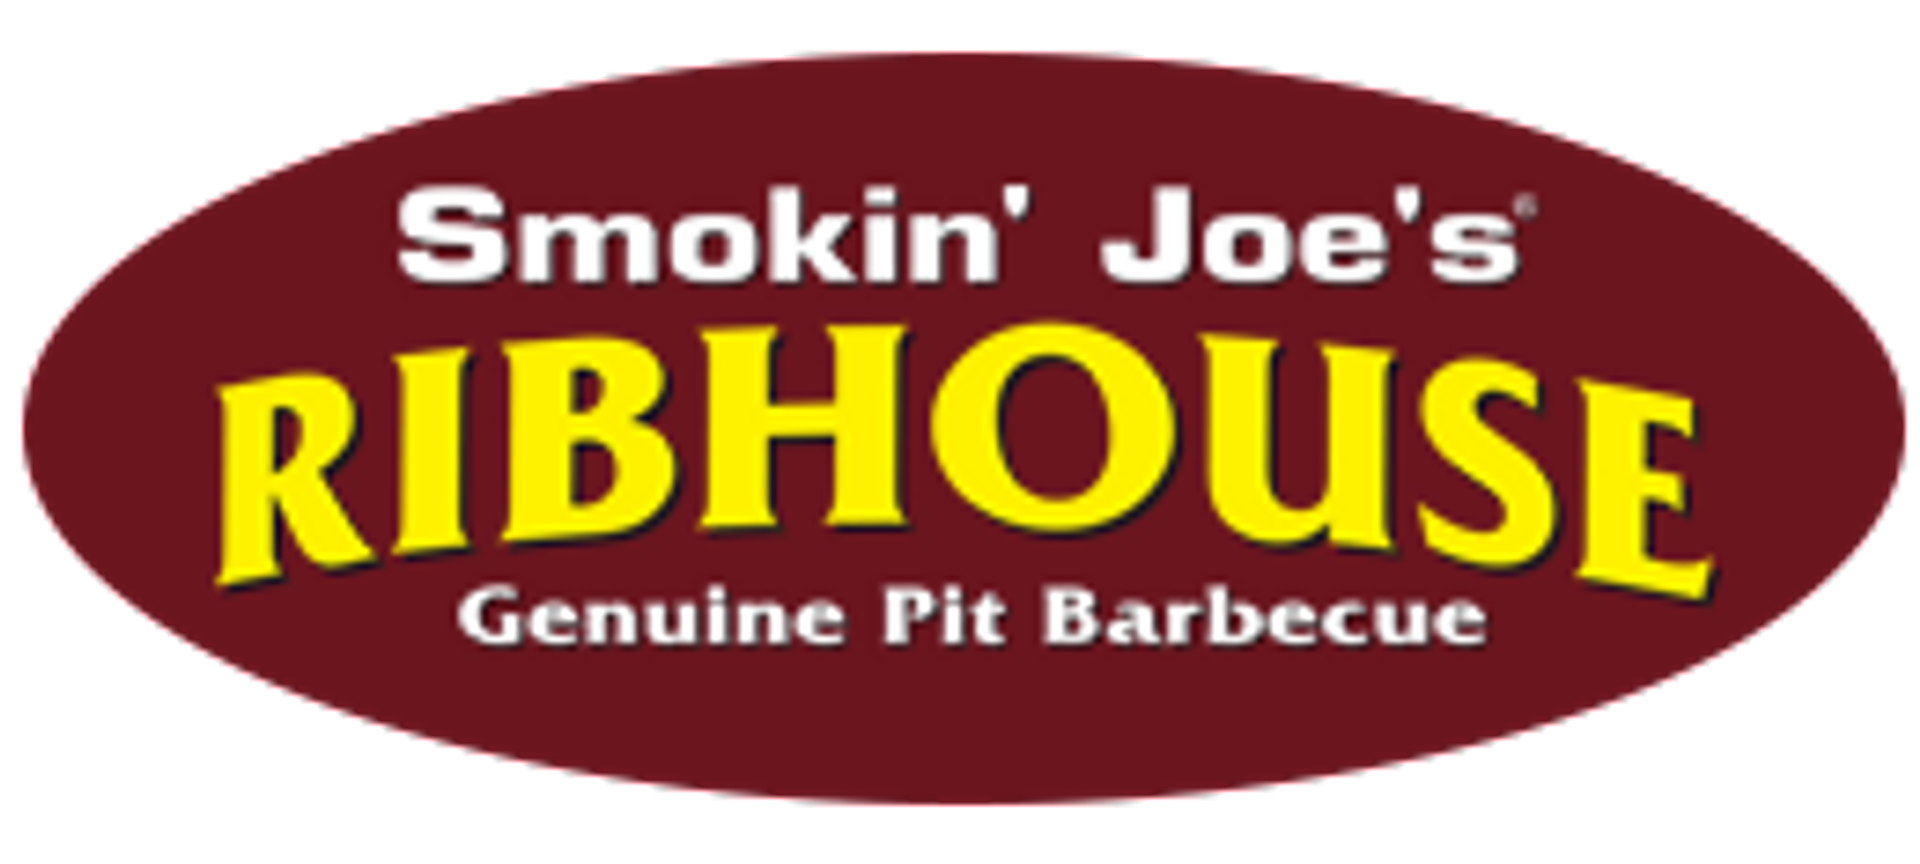 Smokin Joe's Ribhouse